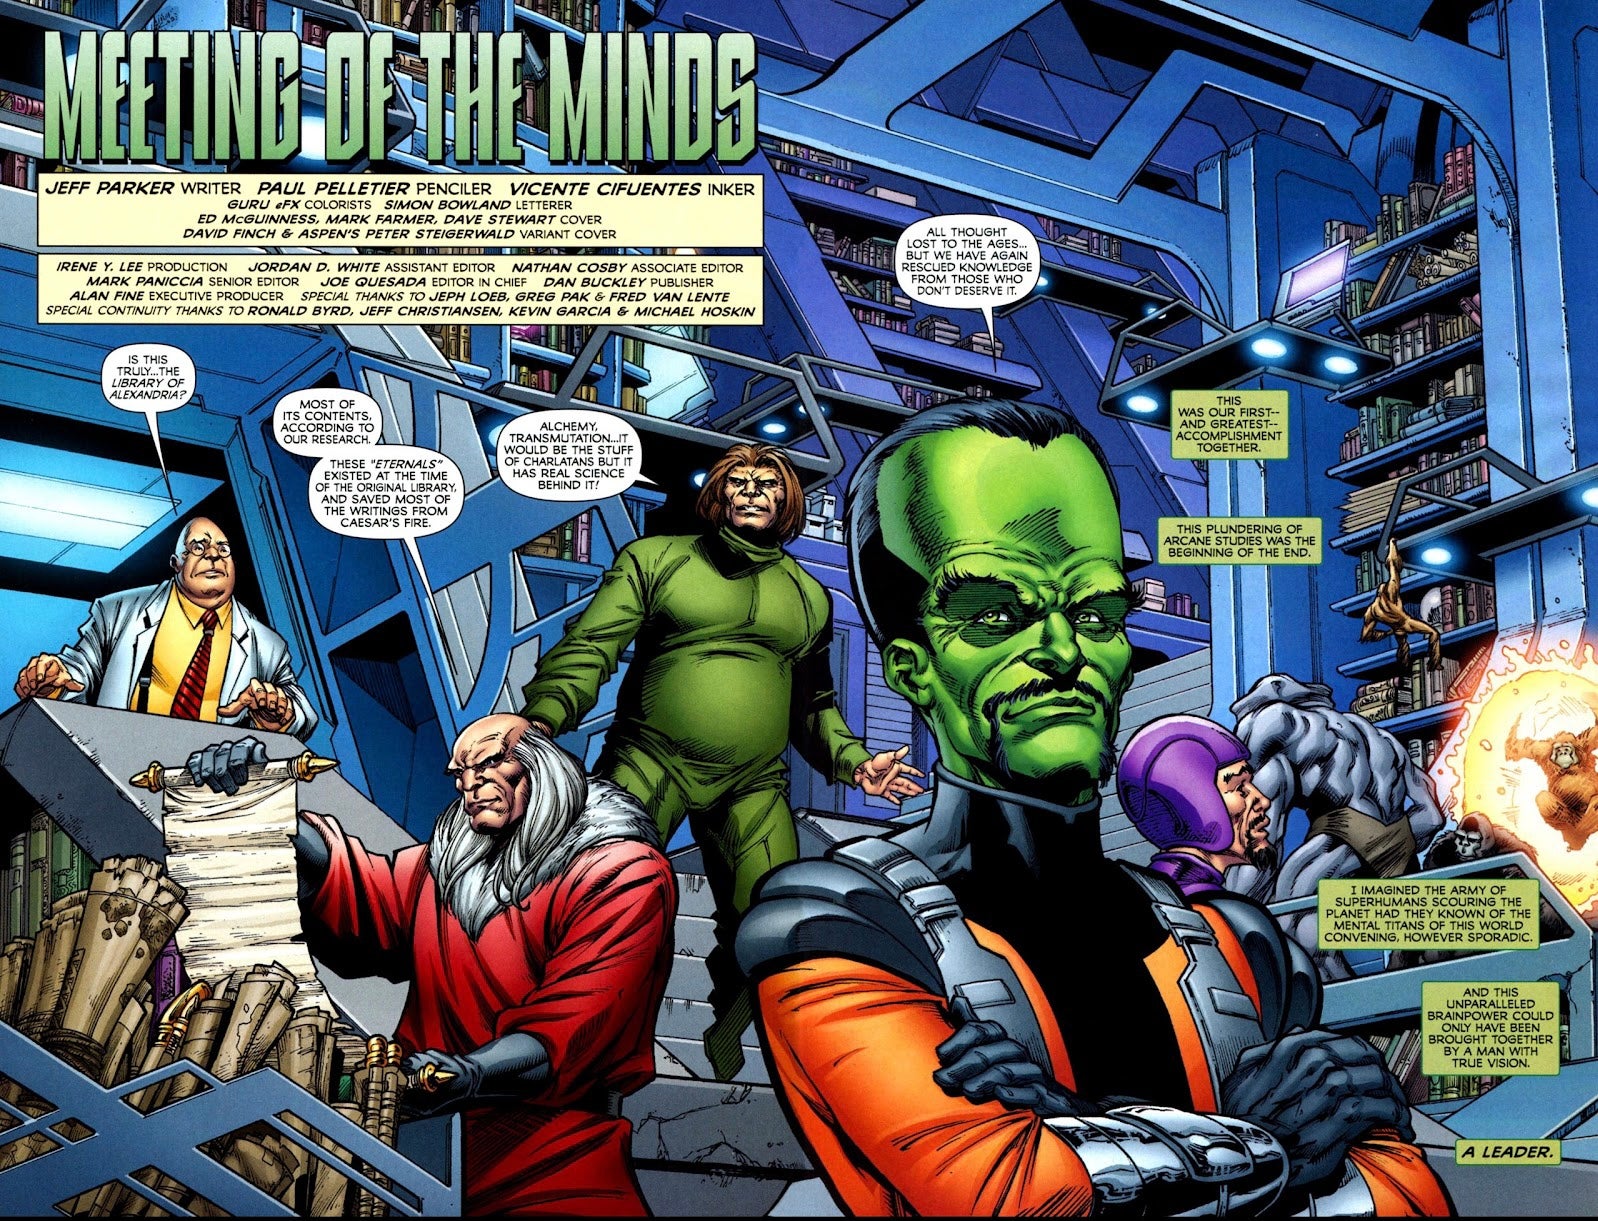 Interior comics art featuring the original Intelligencia